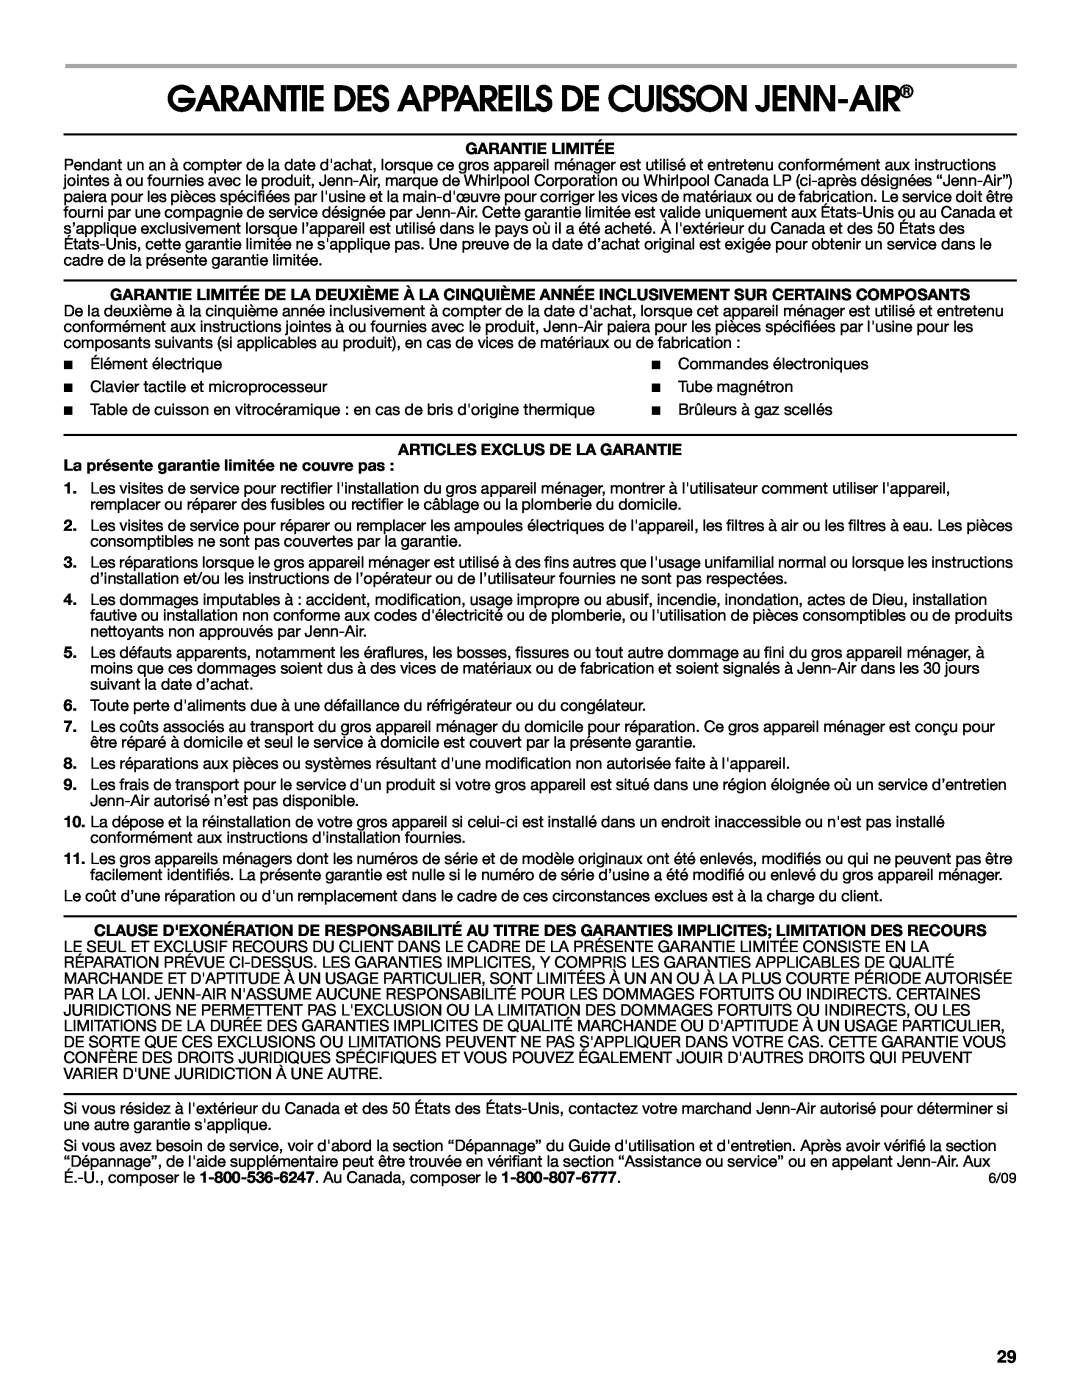 Jenn-Air JGCP536, JGCP548 Garantie Des Appareils De Cuisson Jenn-Air, Garantie Limitée, Articles Exclus De La Garantie 